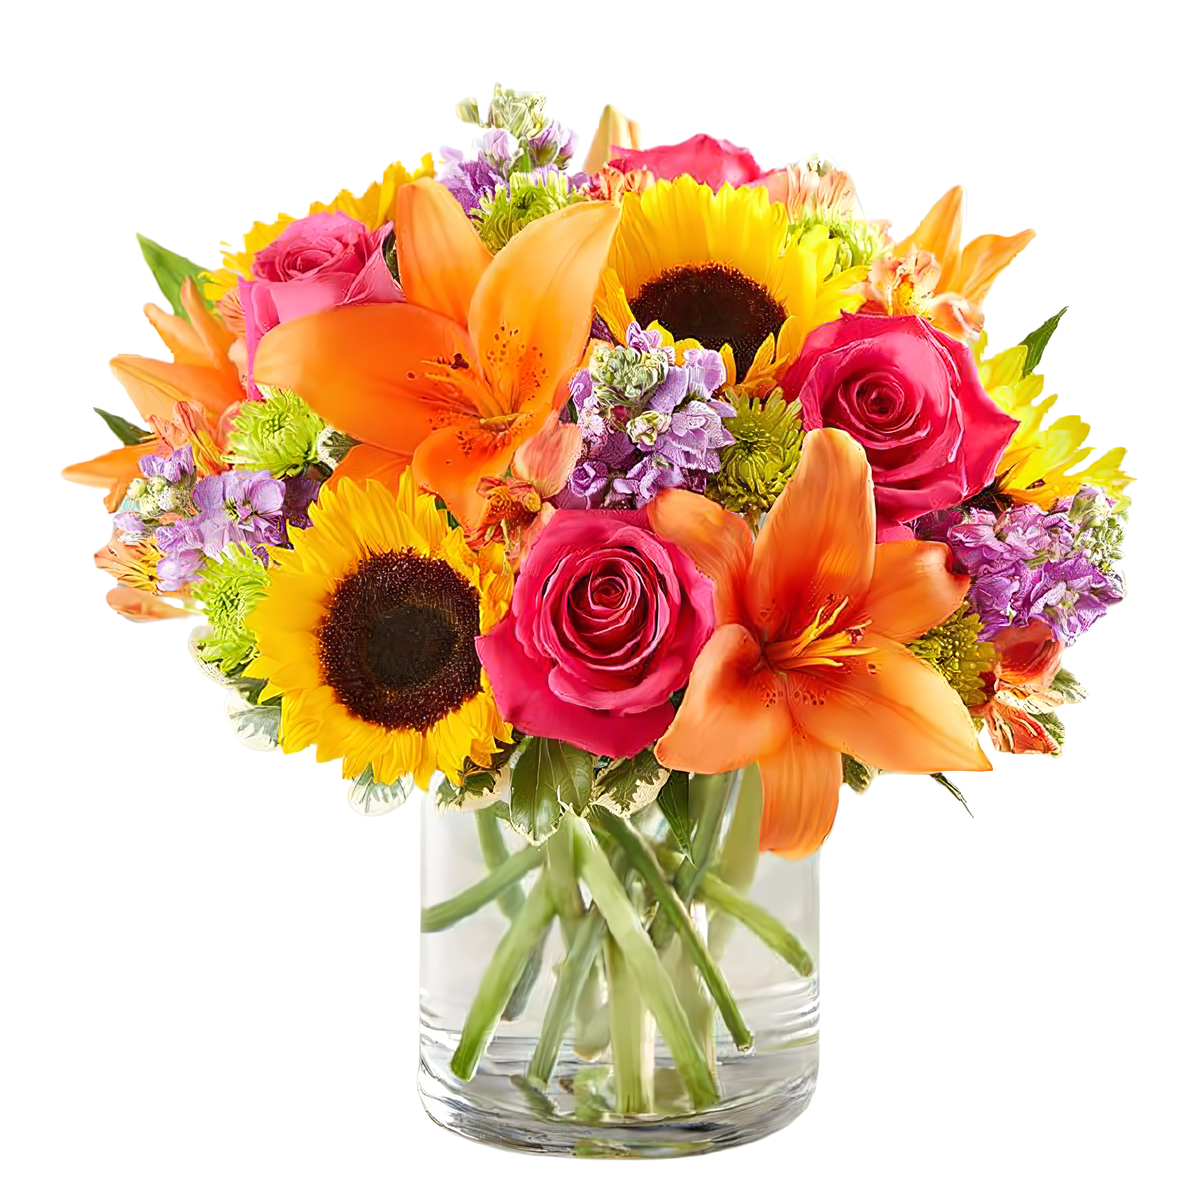 Manhattan Flower Delivery - Floral Fantasy - Birthdays